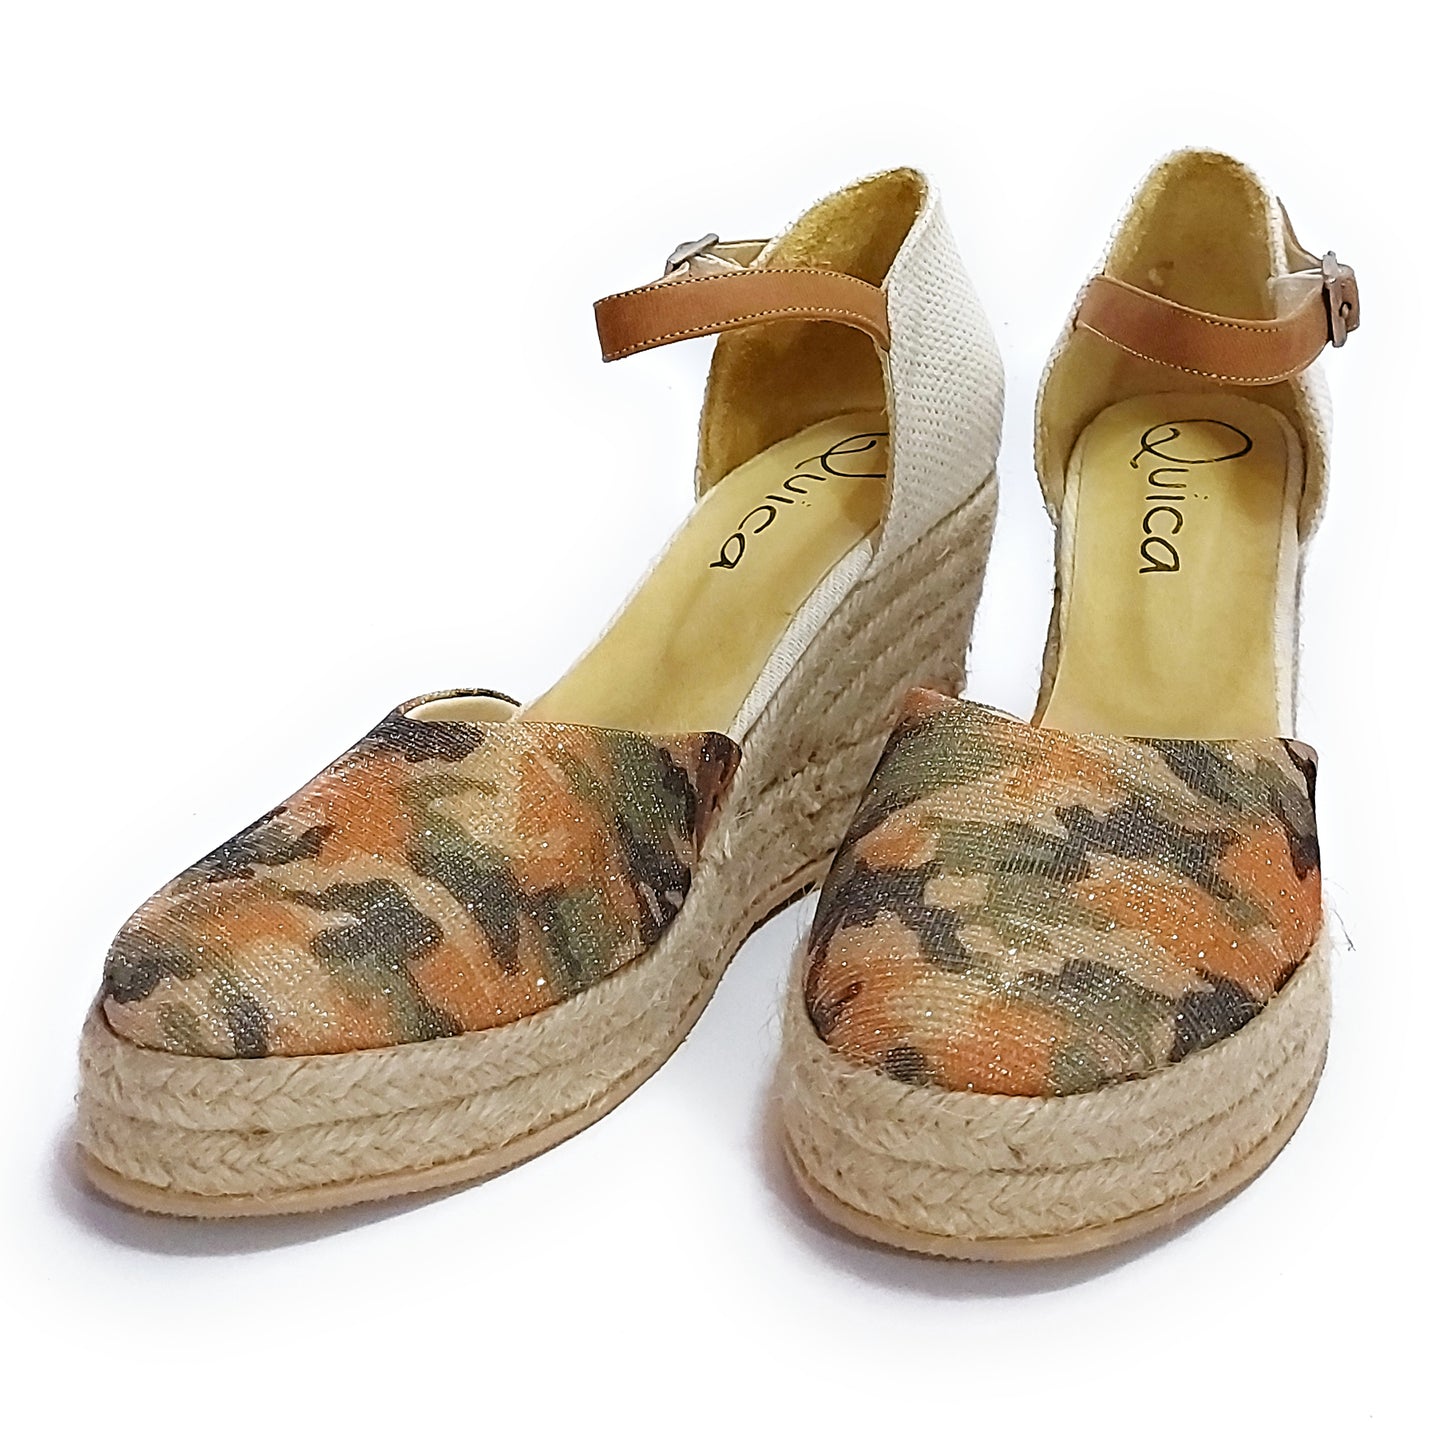 Espadrilles Espadrilles Chinese Heel Platform Sandals Jute Quica Ceibas